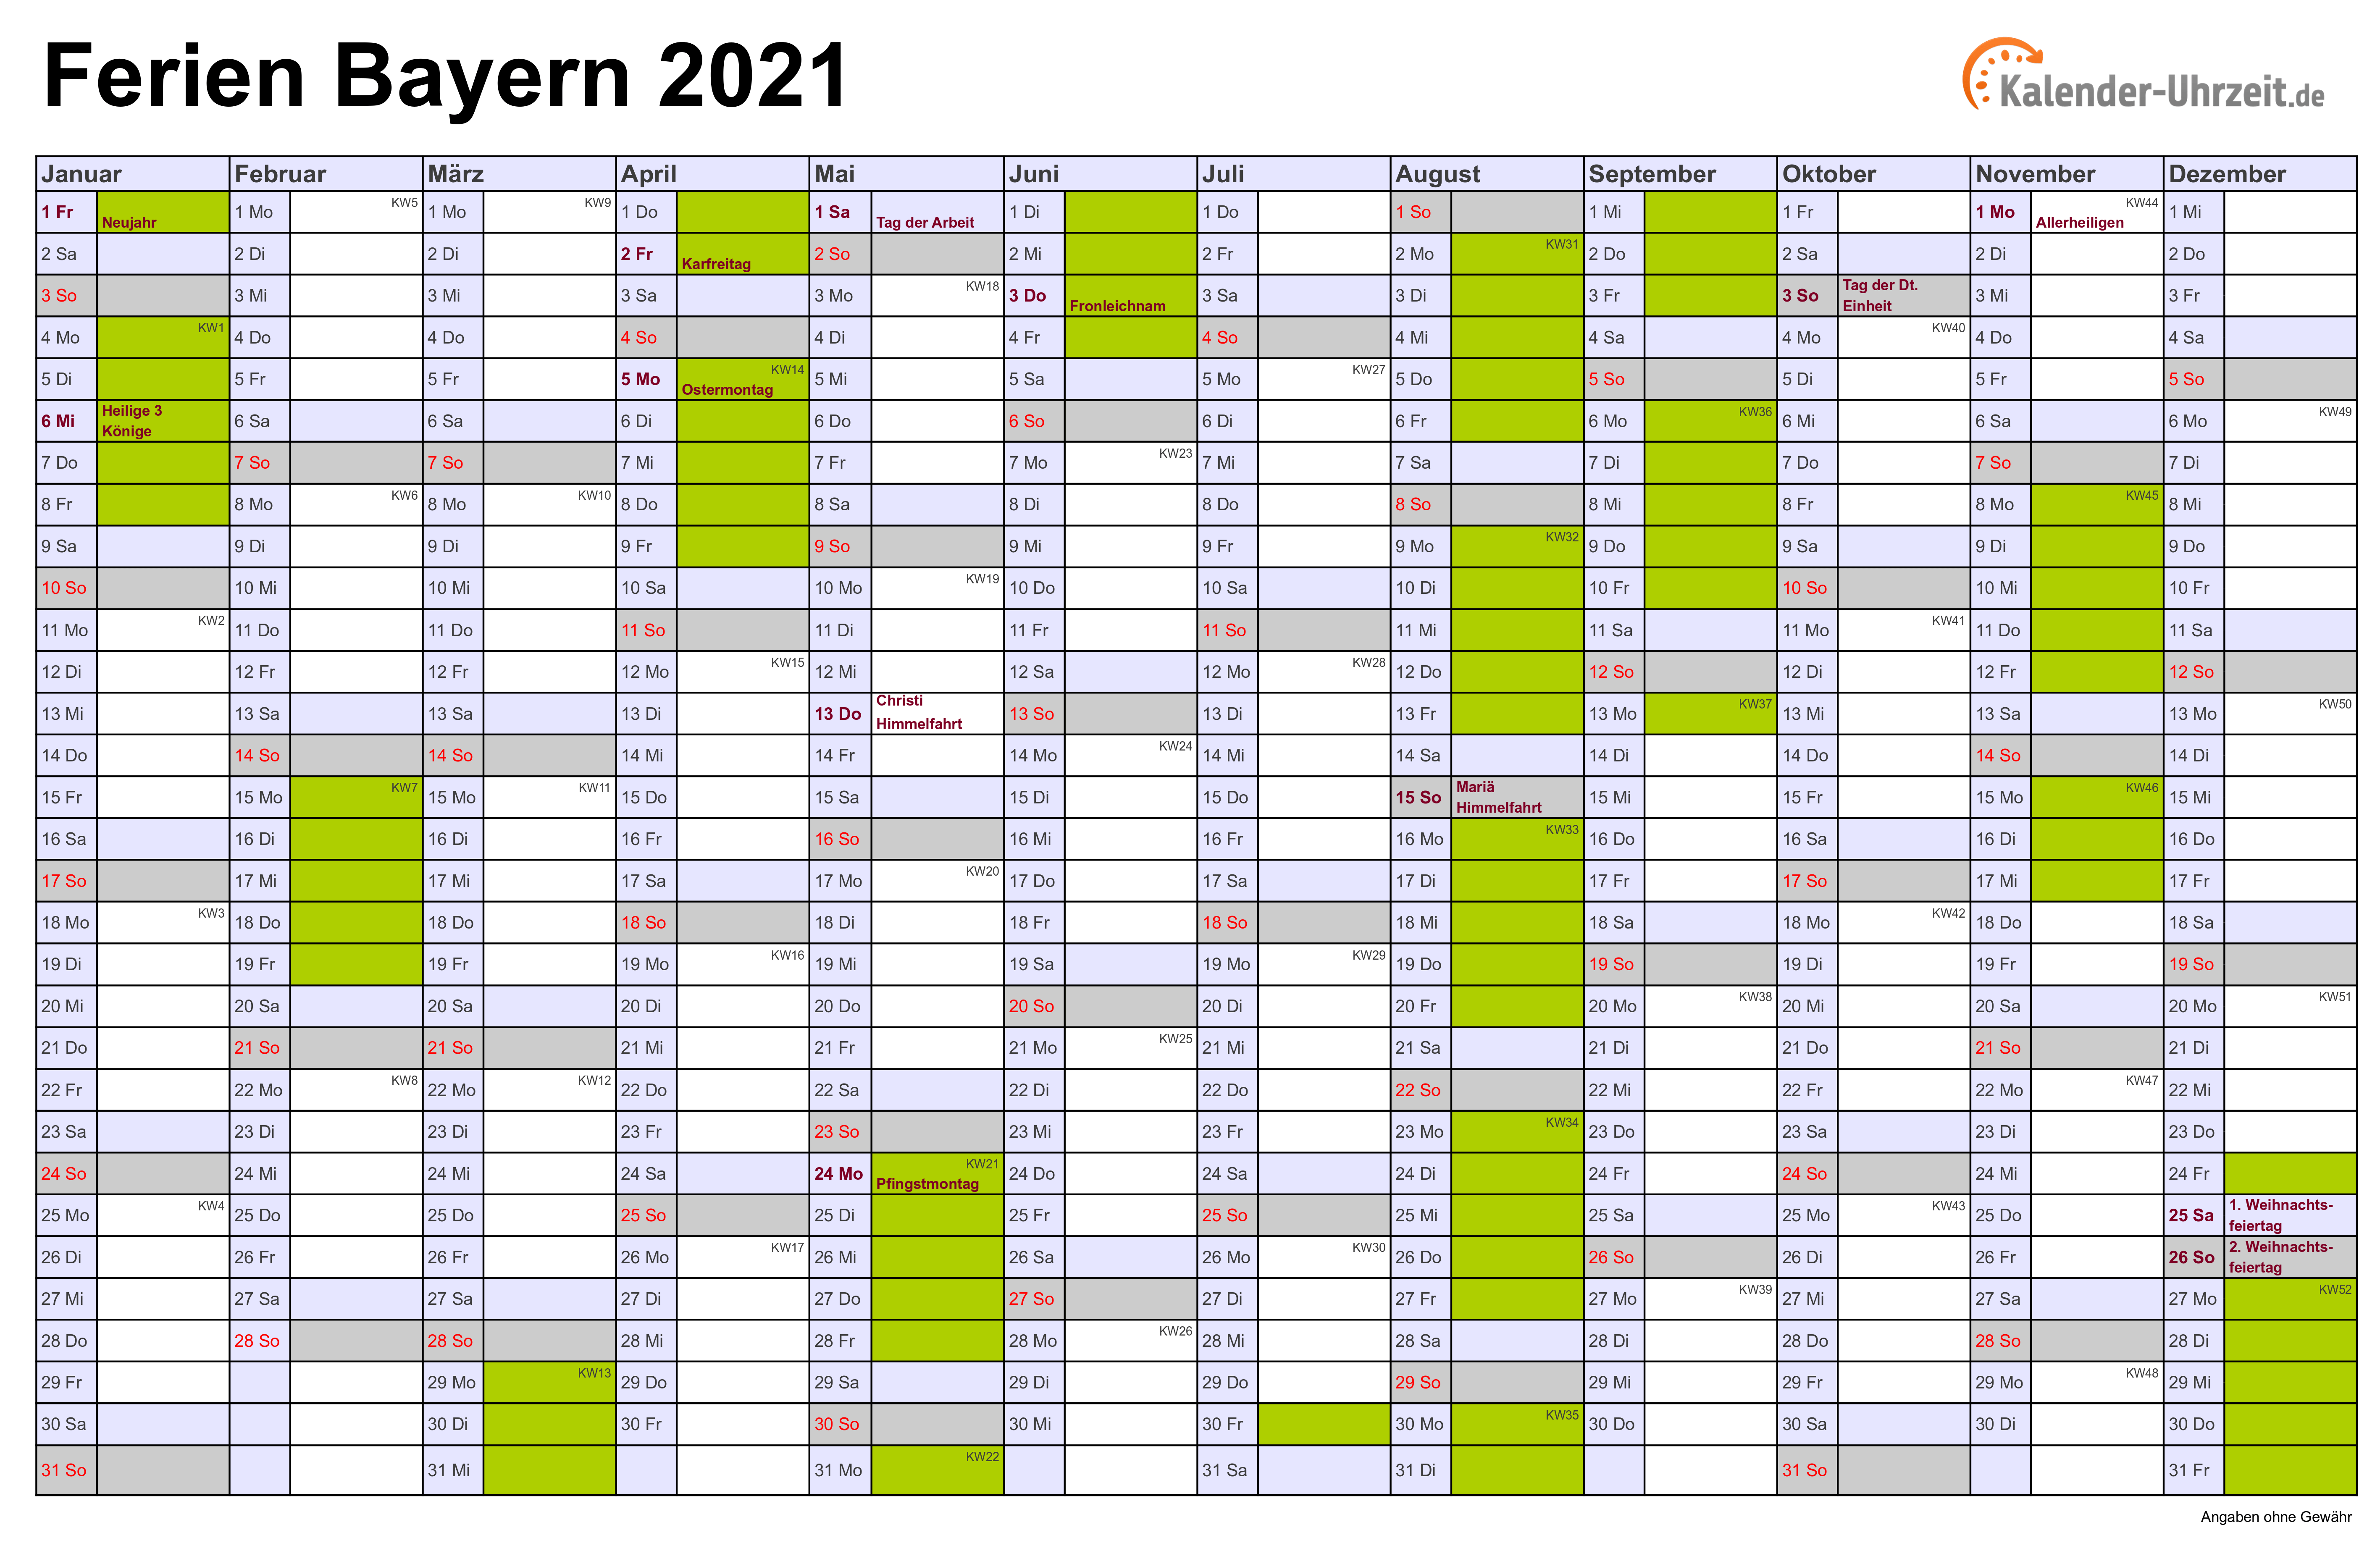 Ferien Bayern 2021 - Ferienkalender zum Ausdrucken